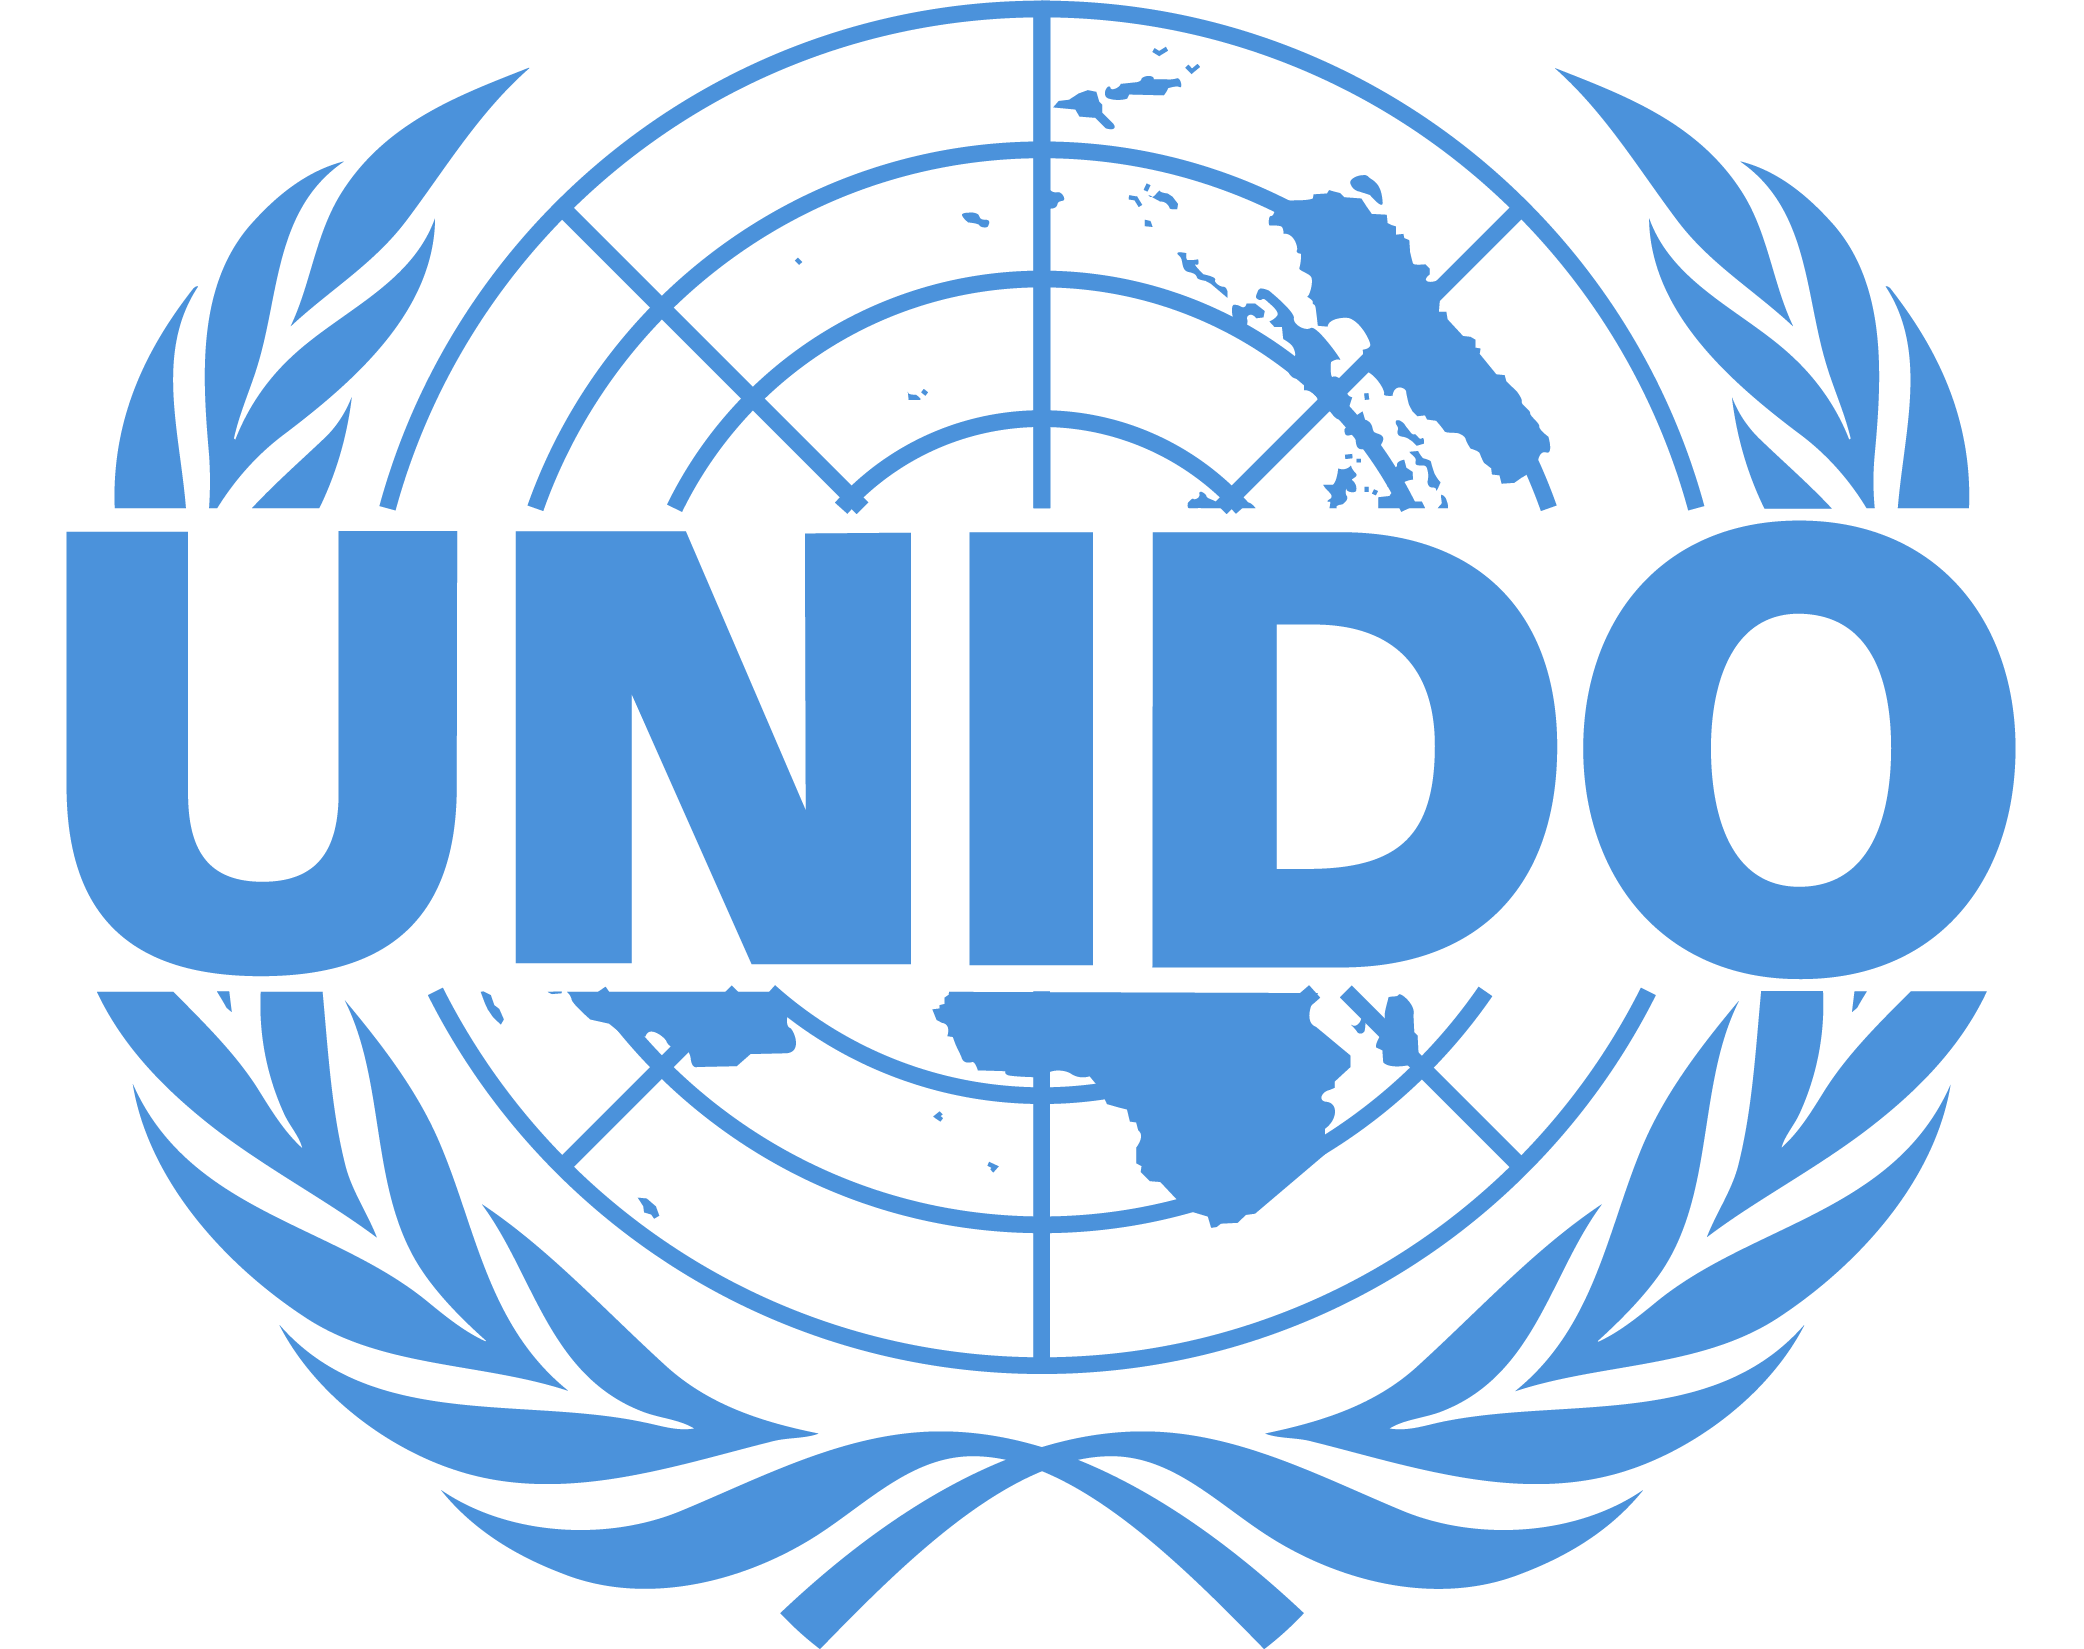 联合国工业发展组织